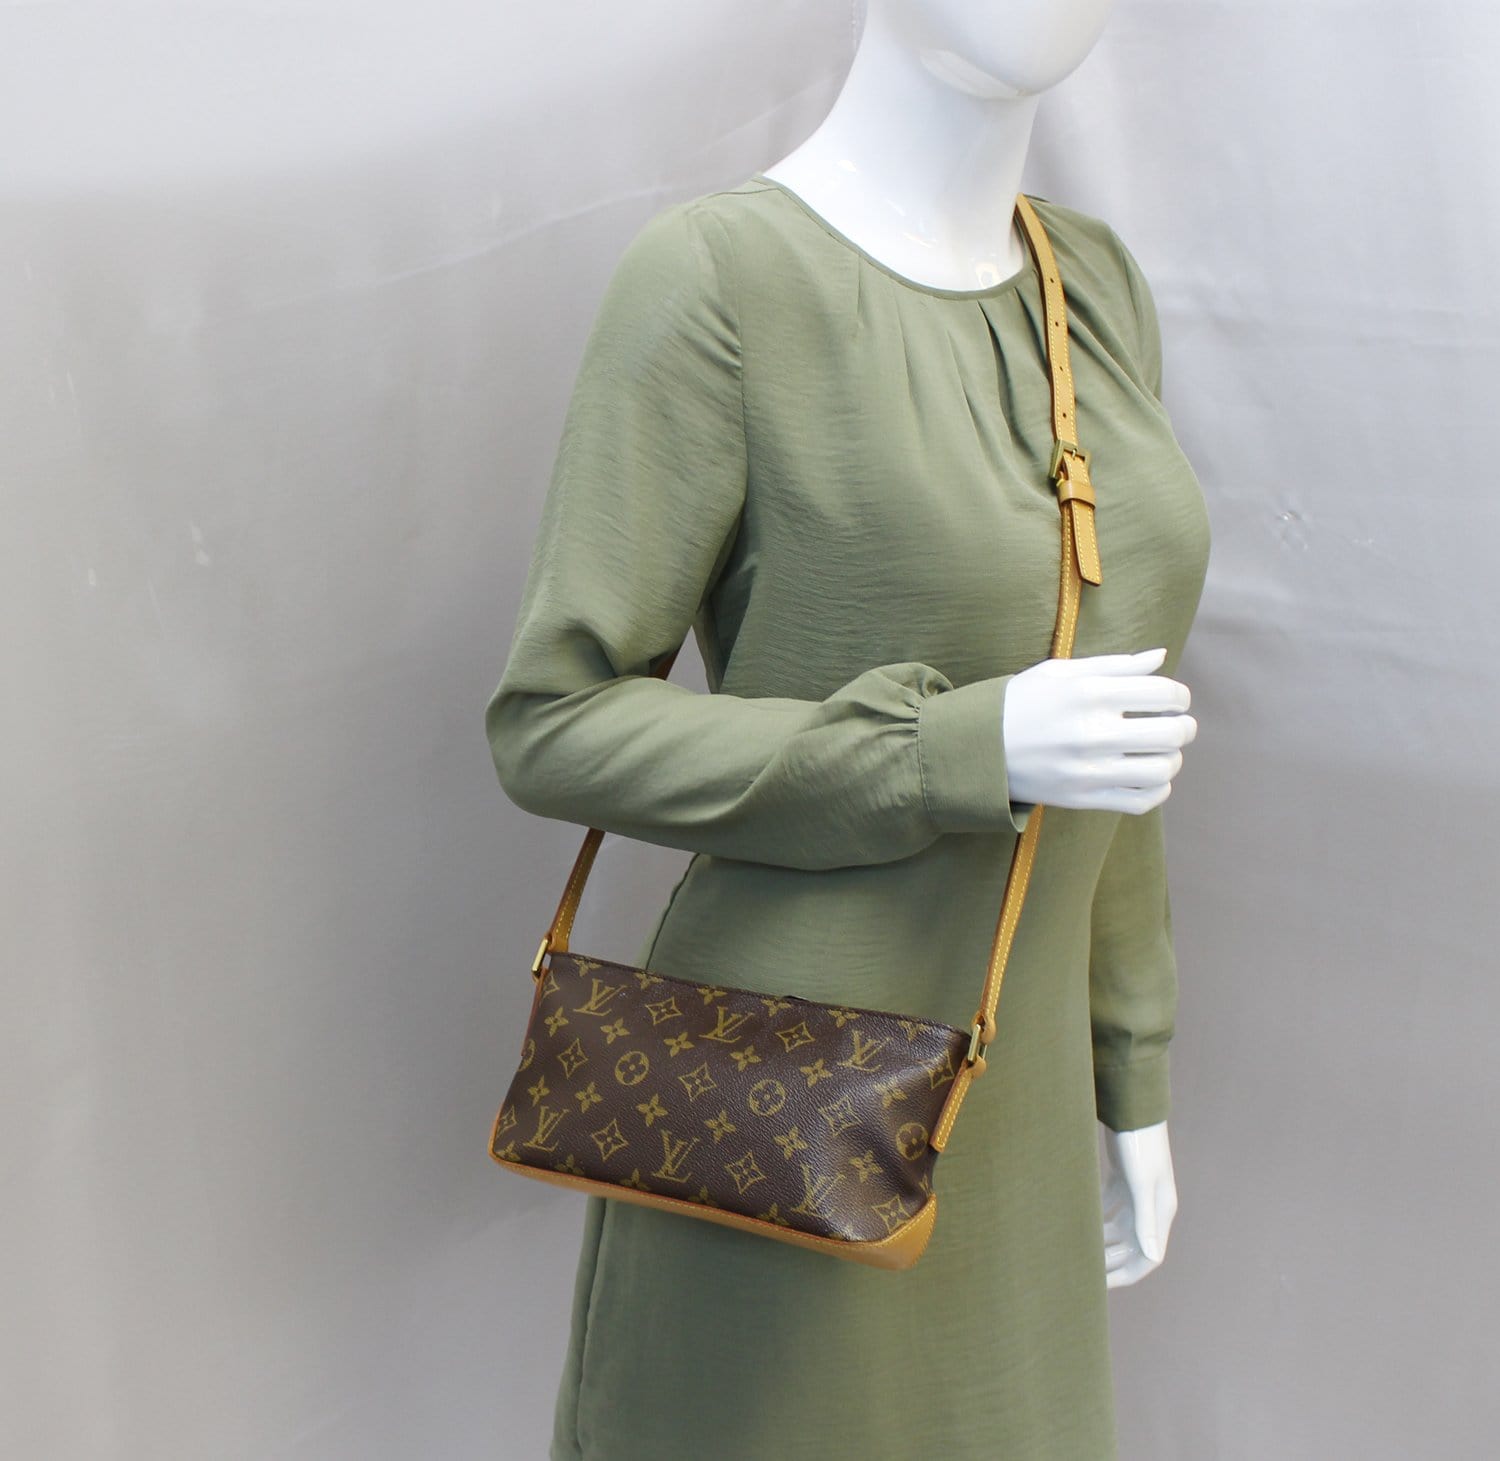 Louis Vuitton, Bags, Authentic Louis Vuitton Trotteur Monogram Crossbody  Bag Ar023